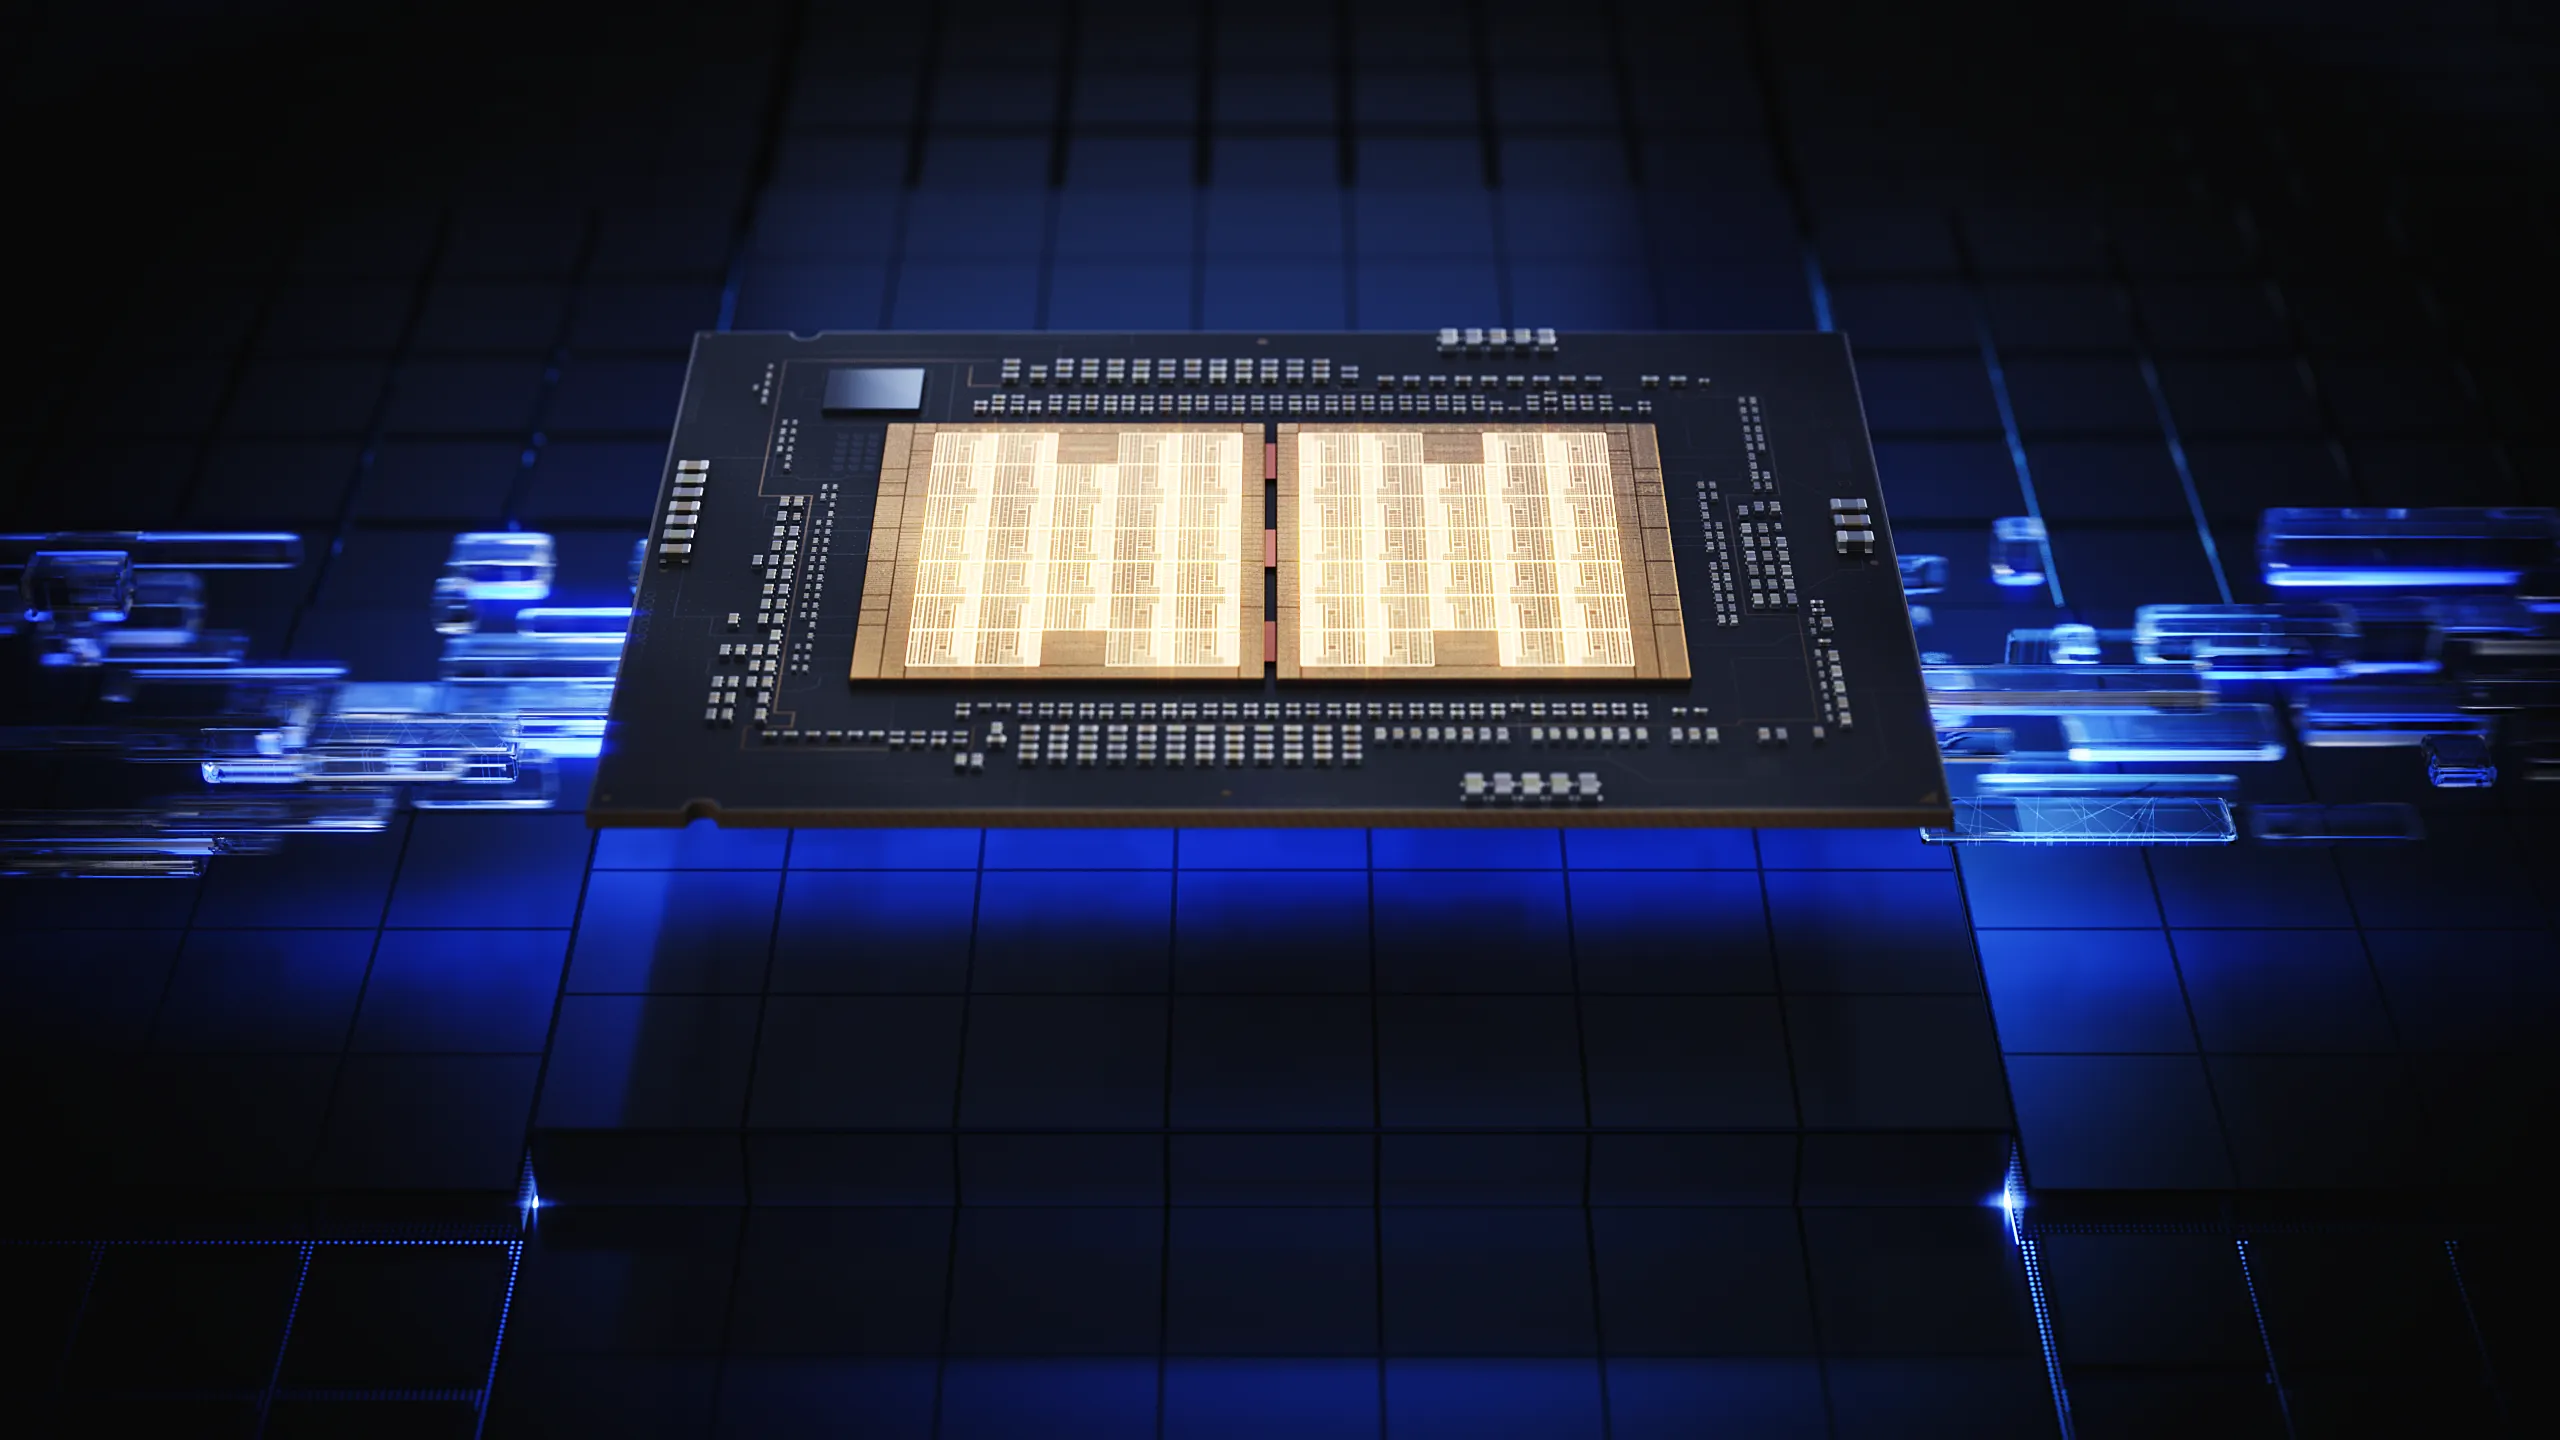 Intel ra mắt vi xử lý Intel Xeon thế hệ 5, hiệu năng AI vượt trội